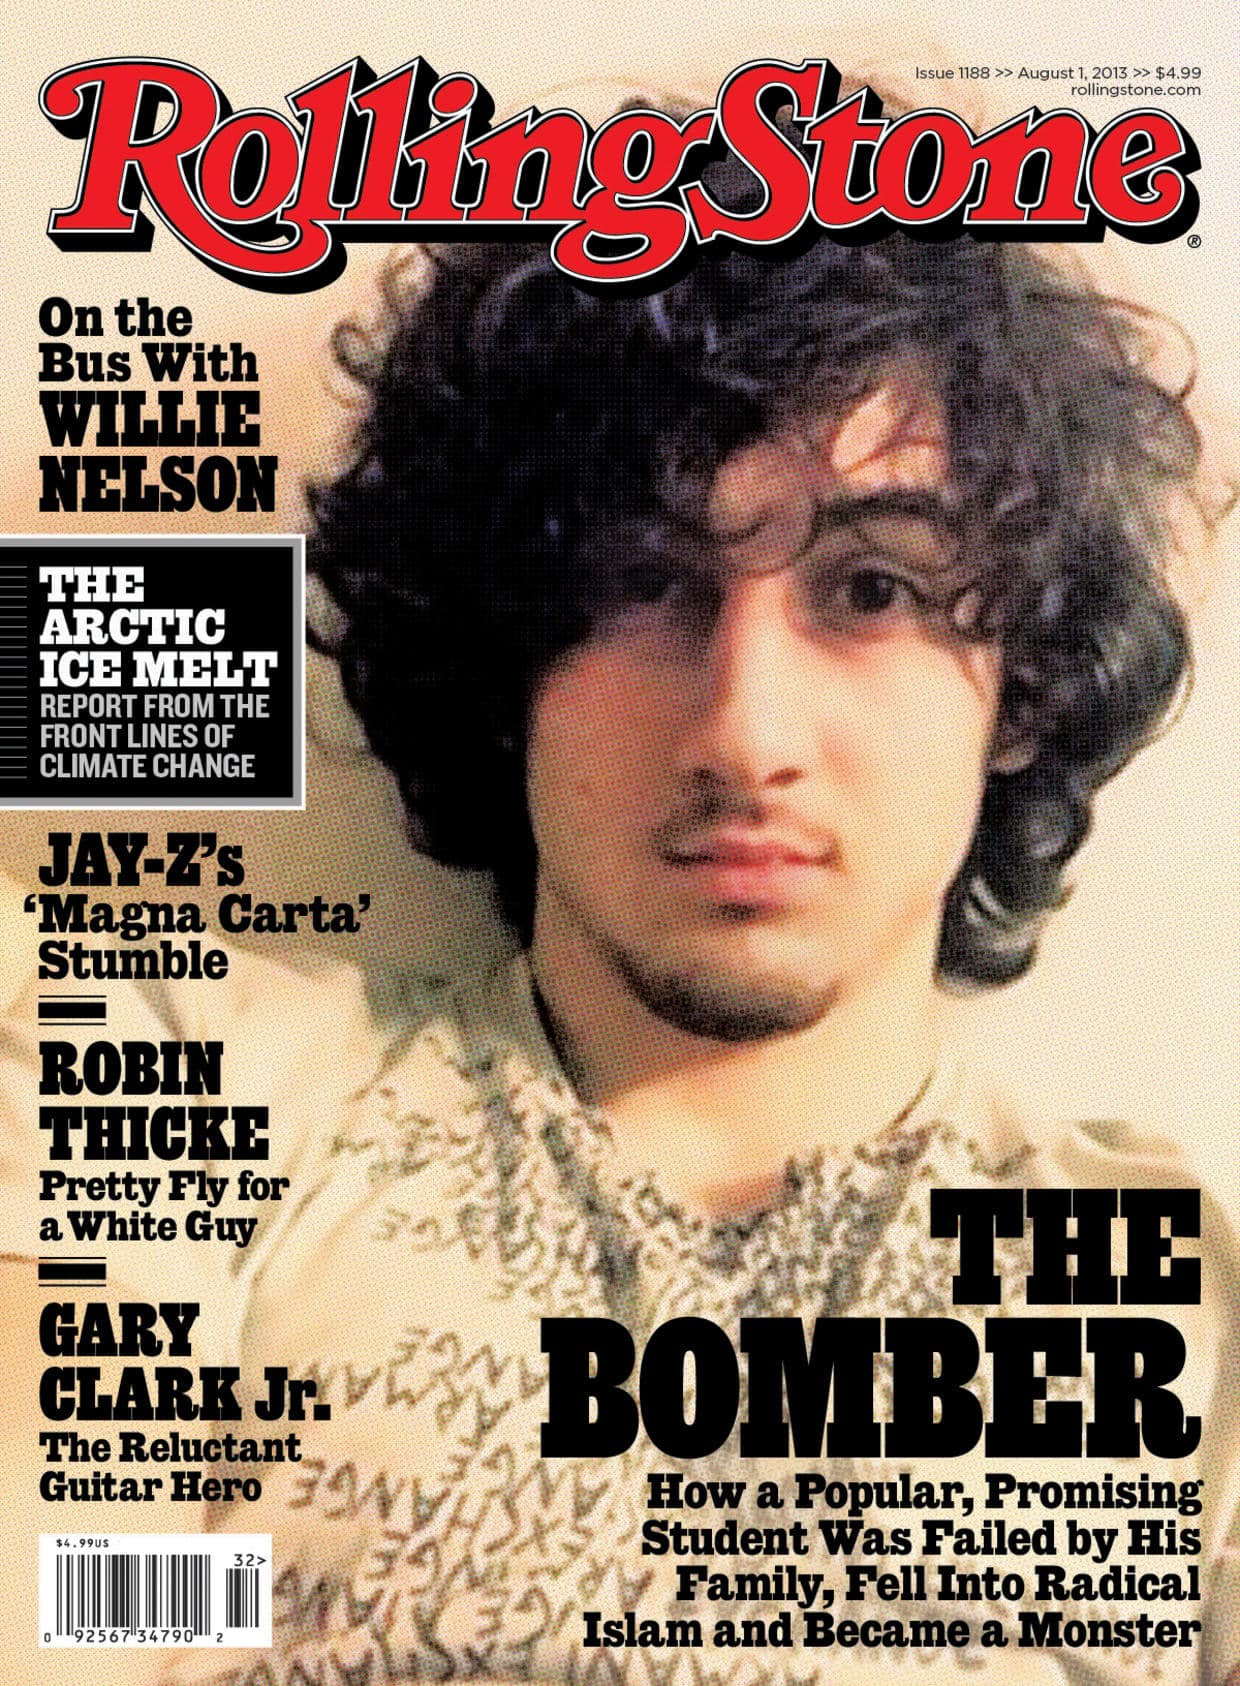 Boston Marathon bombing suspect Dzhokhar Tsarnaev